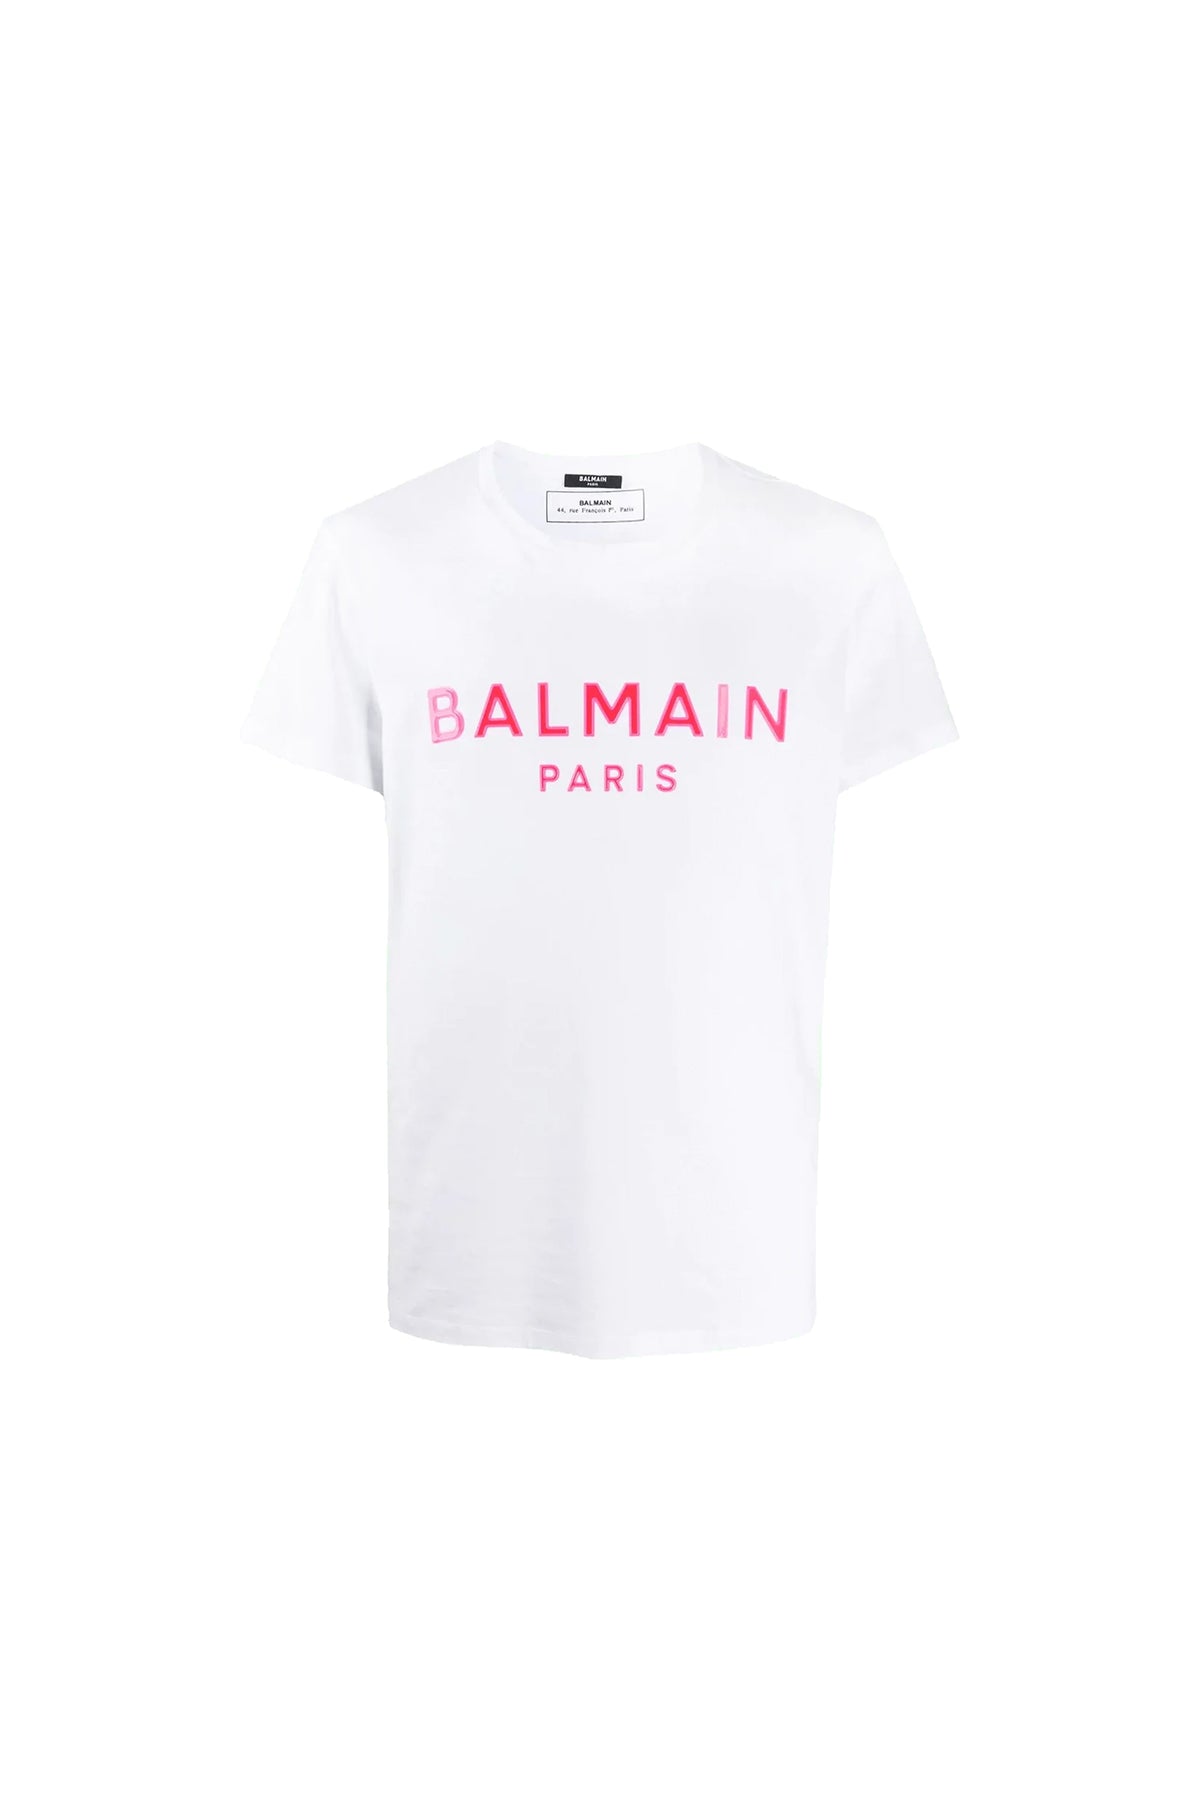 Balmain White/Pink Logo T-Shirt